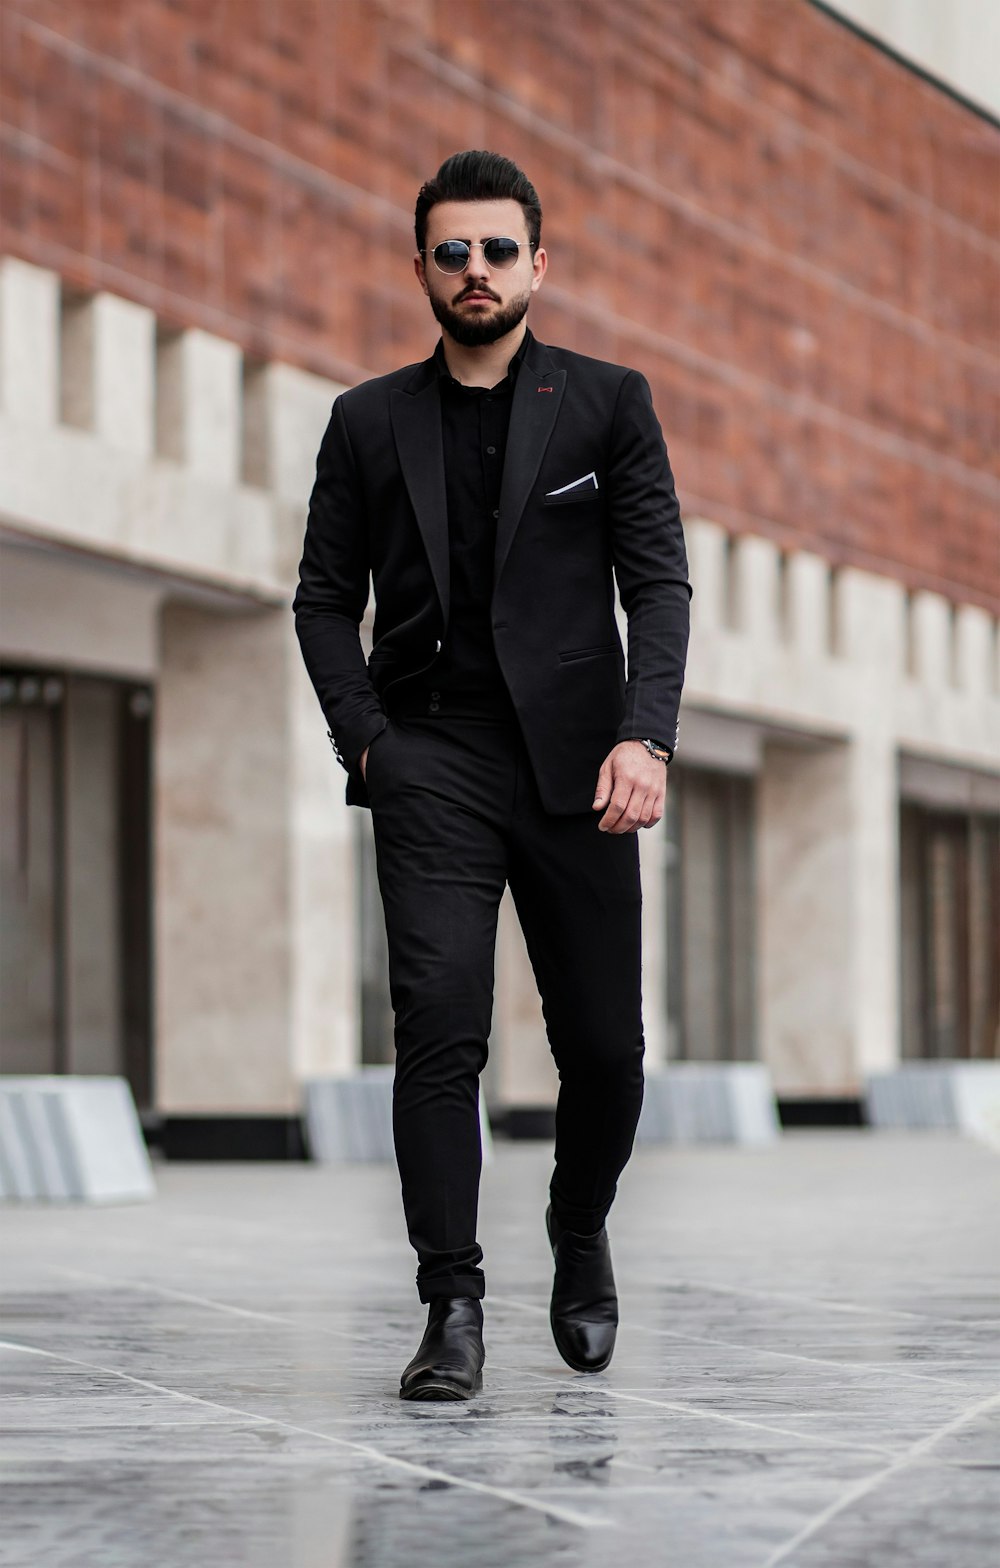 검은 양복 재킷과 검은 바지를 입은 남자가 낮 동안 회색 콘크리트 ��바닥에 서 있다